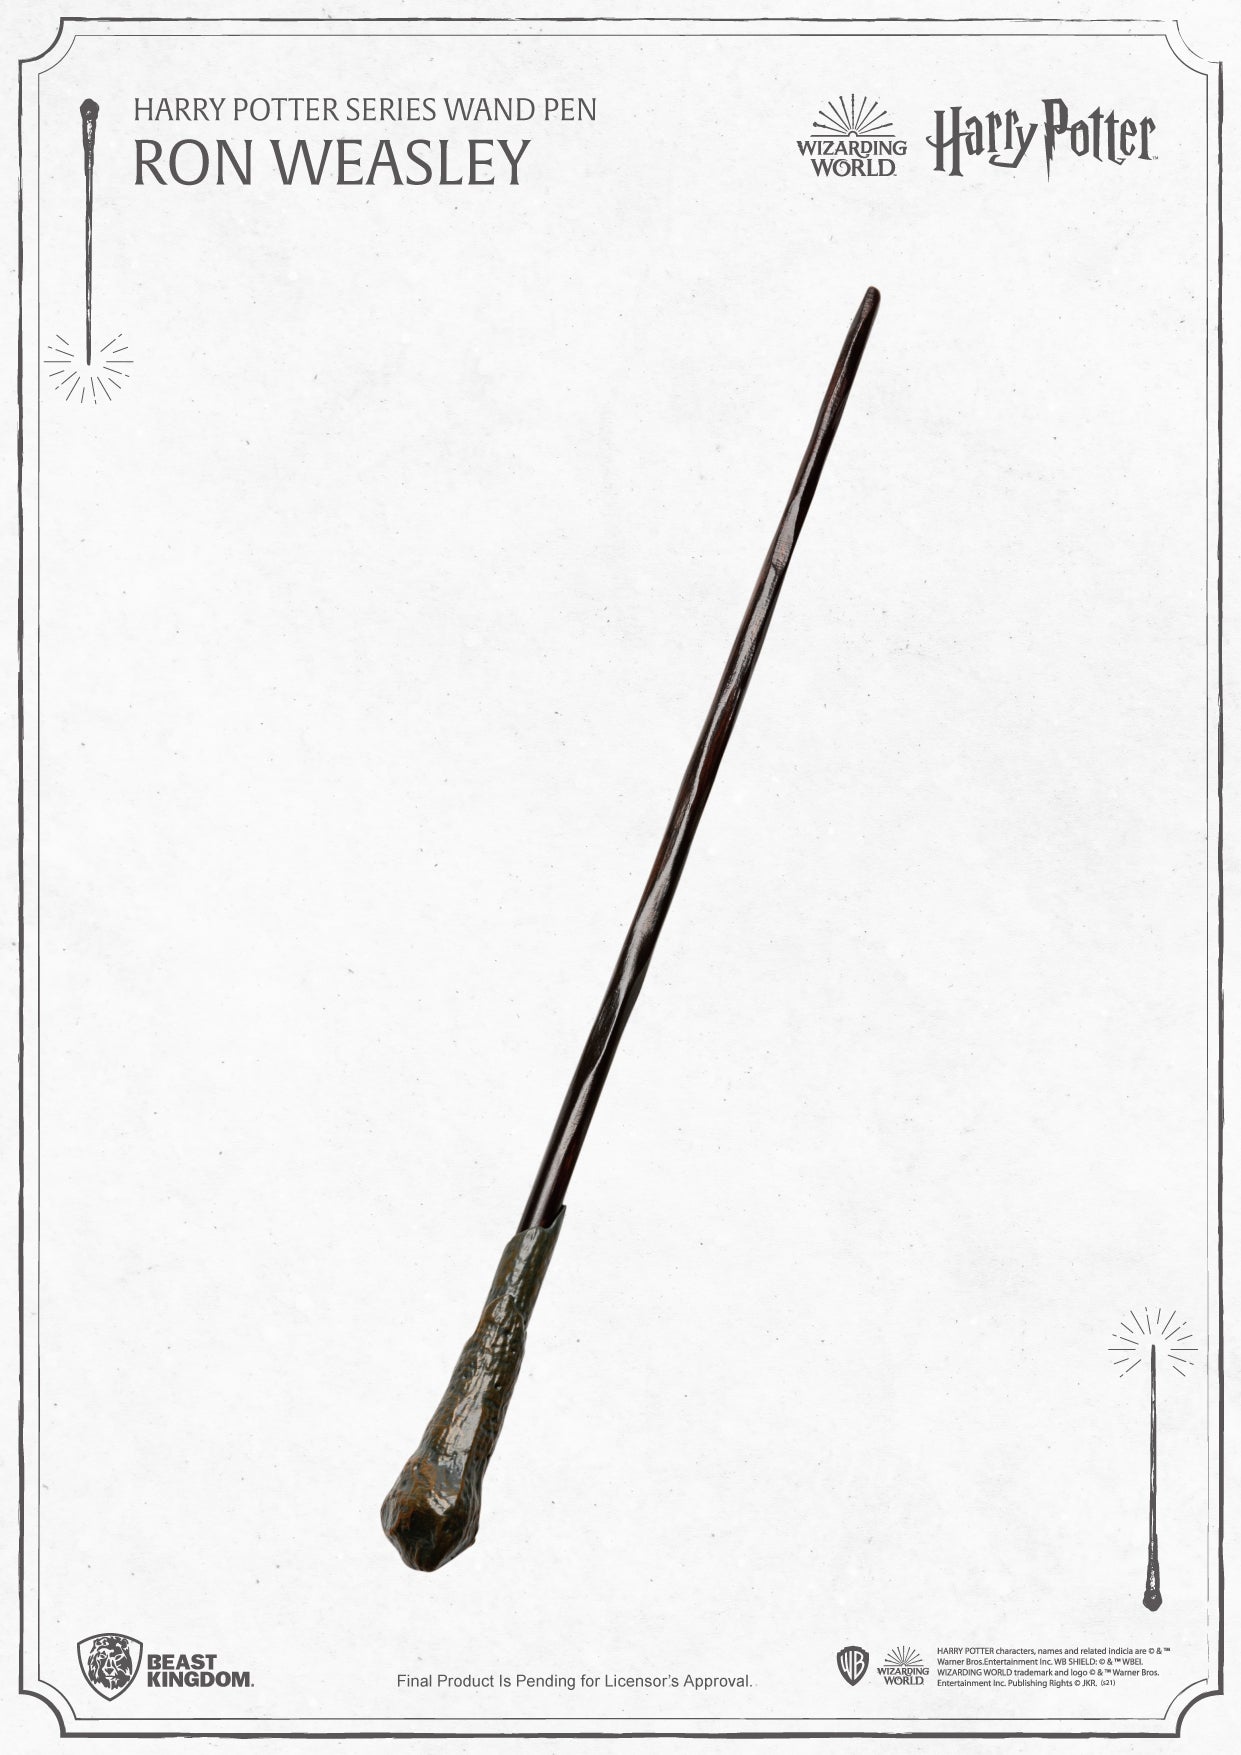 哈利波特系列魔杖笔罗恩韦斯莱 PEN-001-4